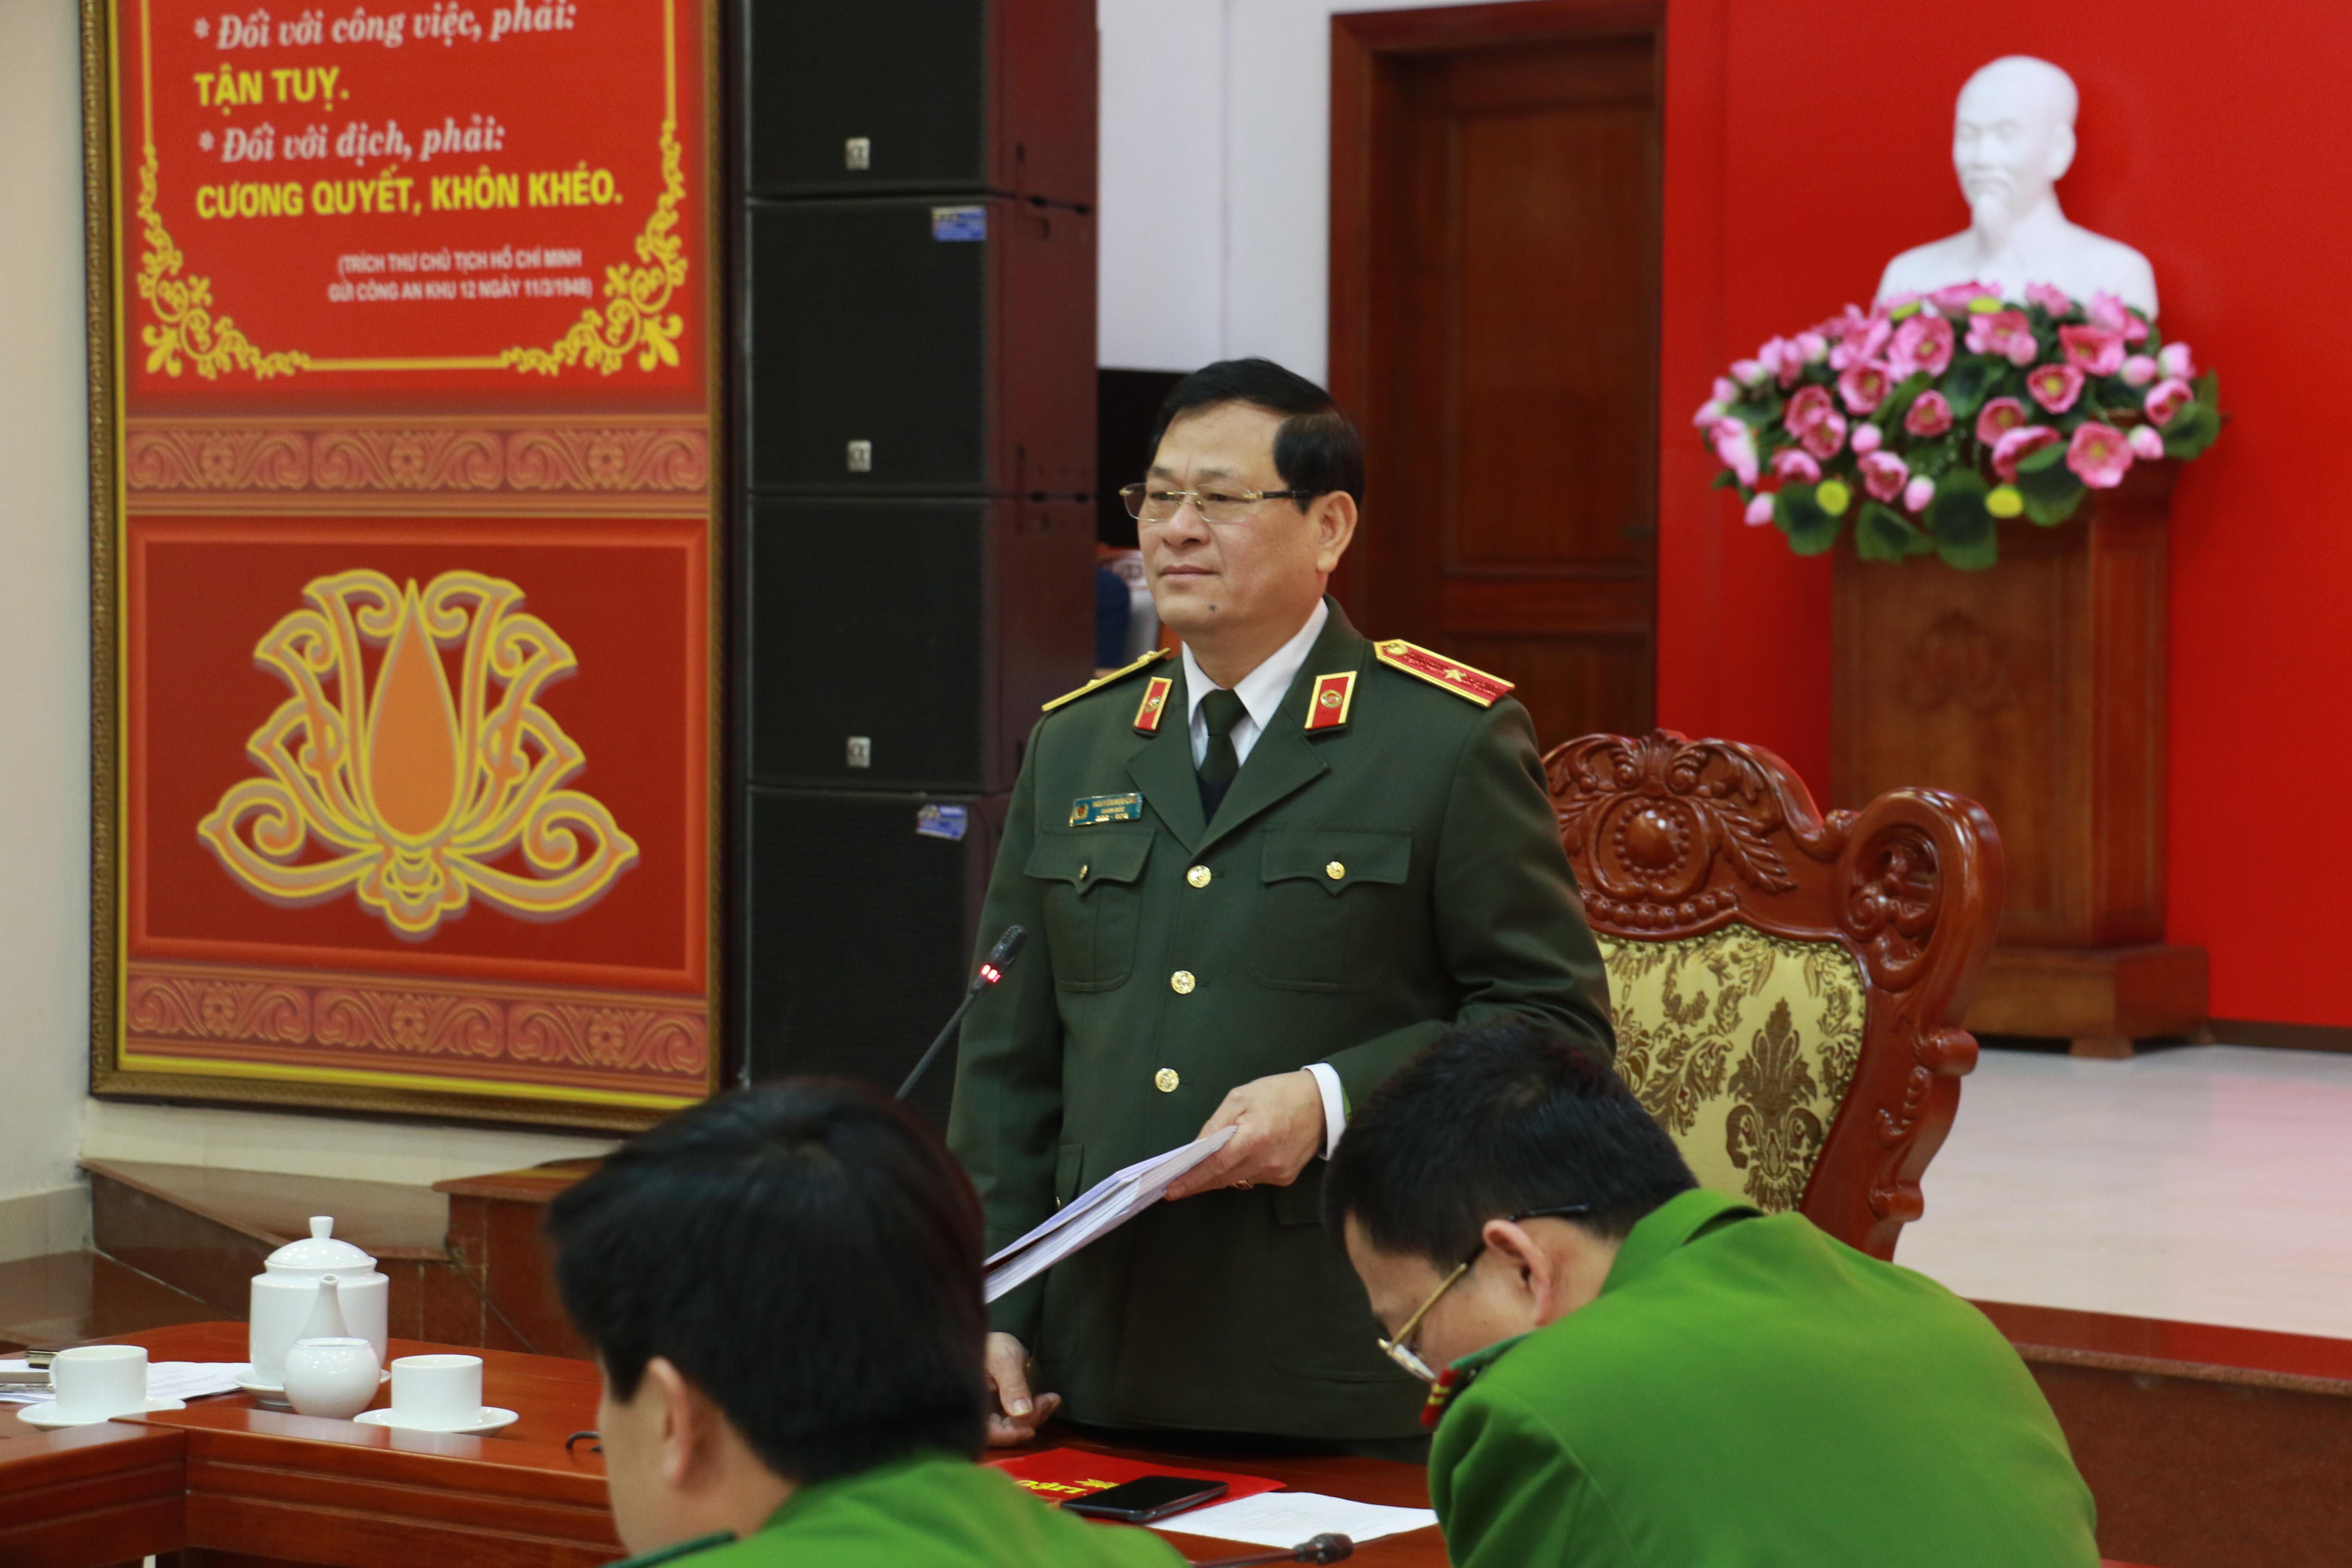 Thiếu tướng Nguyễn Hữu Cầu phát biểu tại hội nghị. Ảnh: Đức Vũ